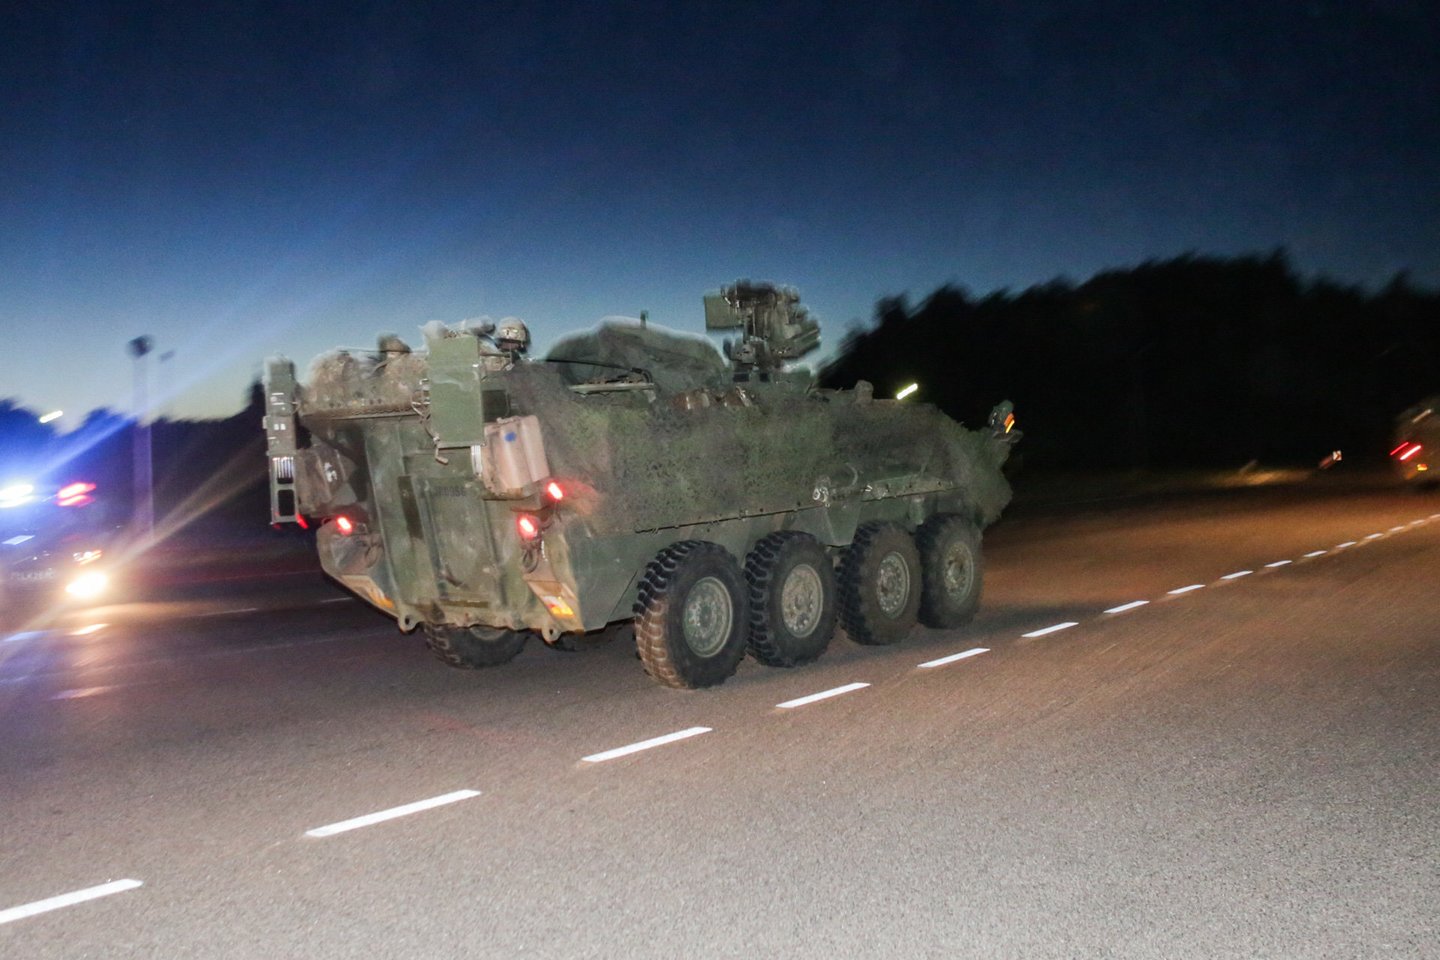 NATO sąjungininkų karinė technika į Lietuvos teritoriją įvažiavo naktį. <br> G. Bitvinsko nuotr.